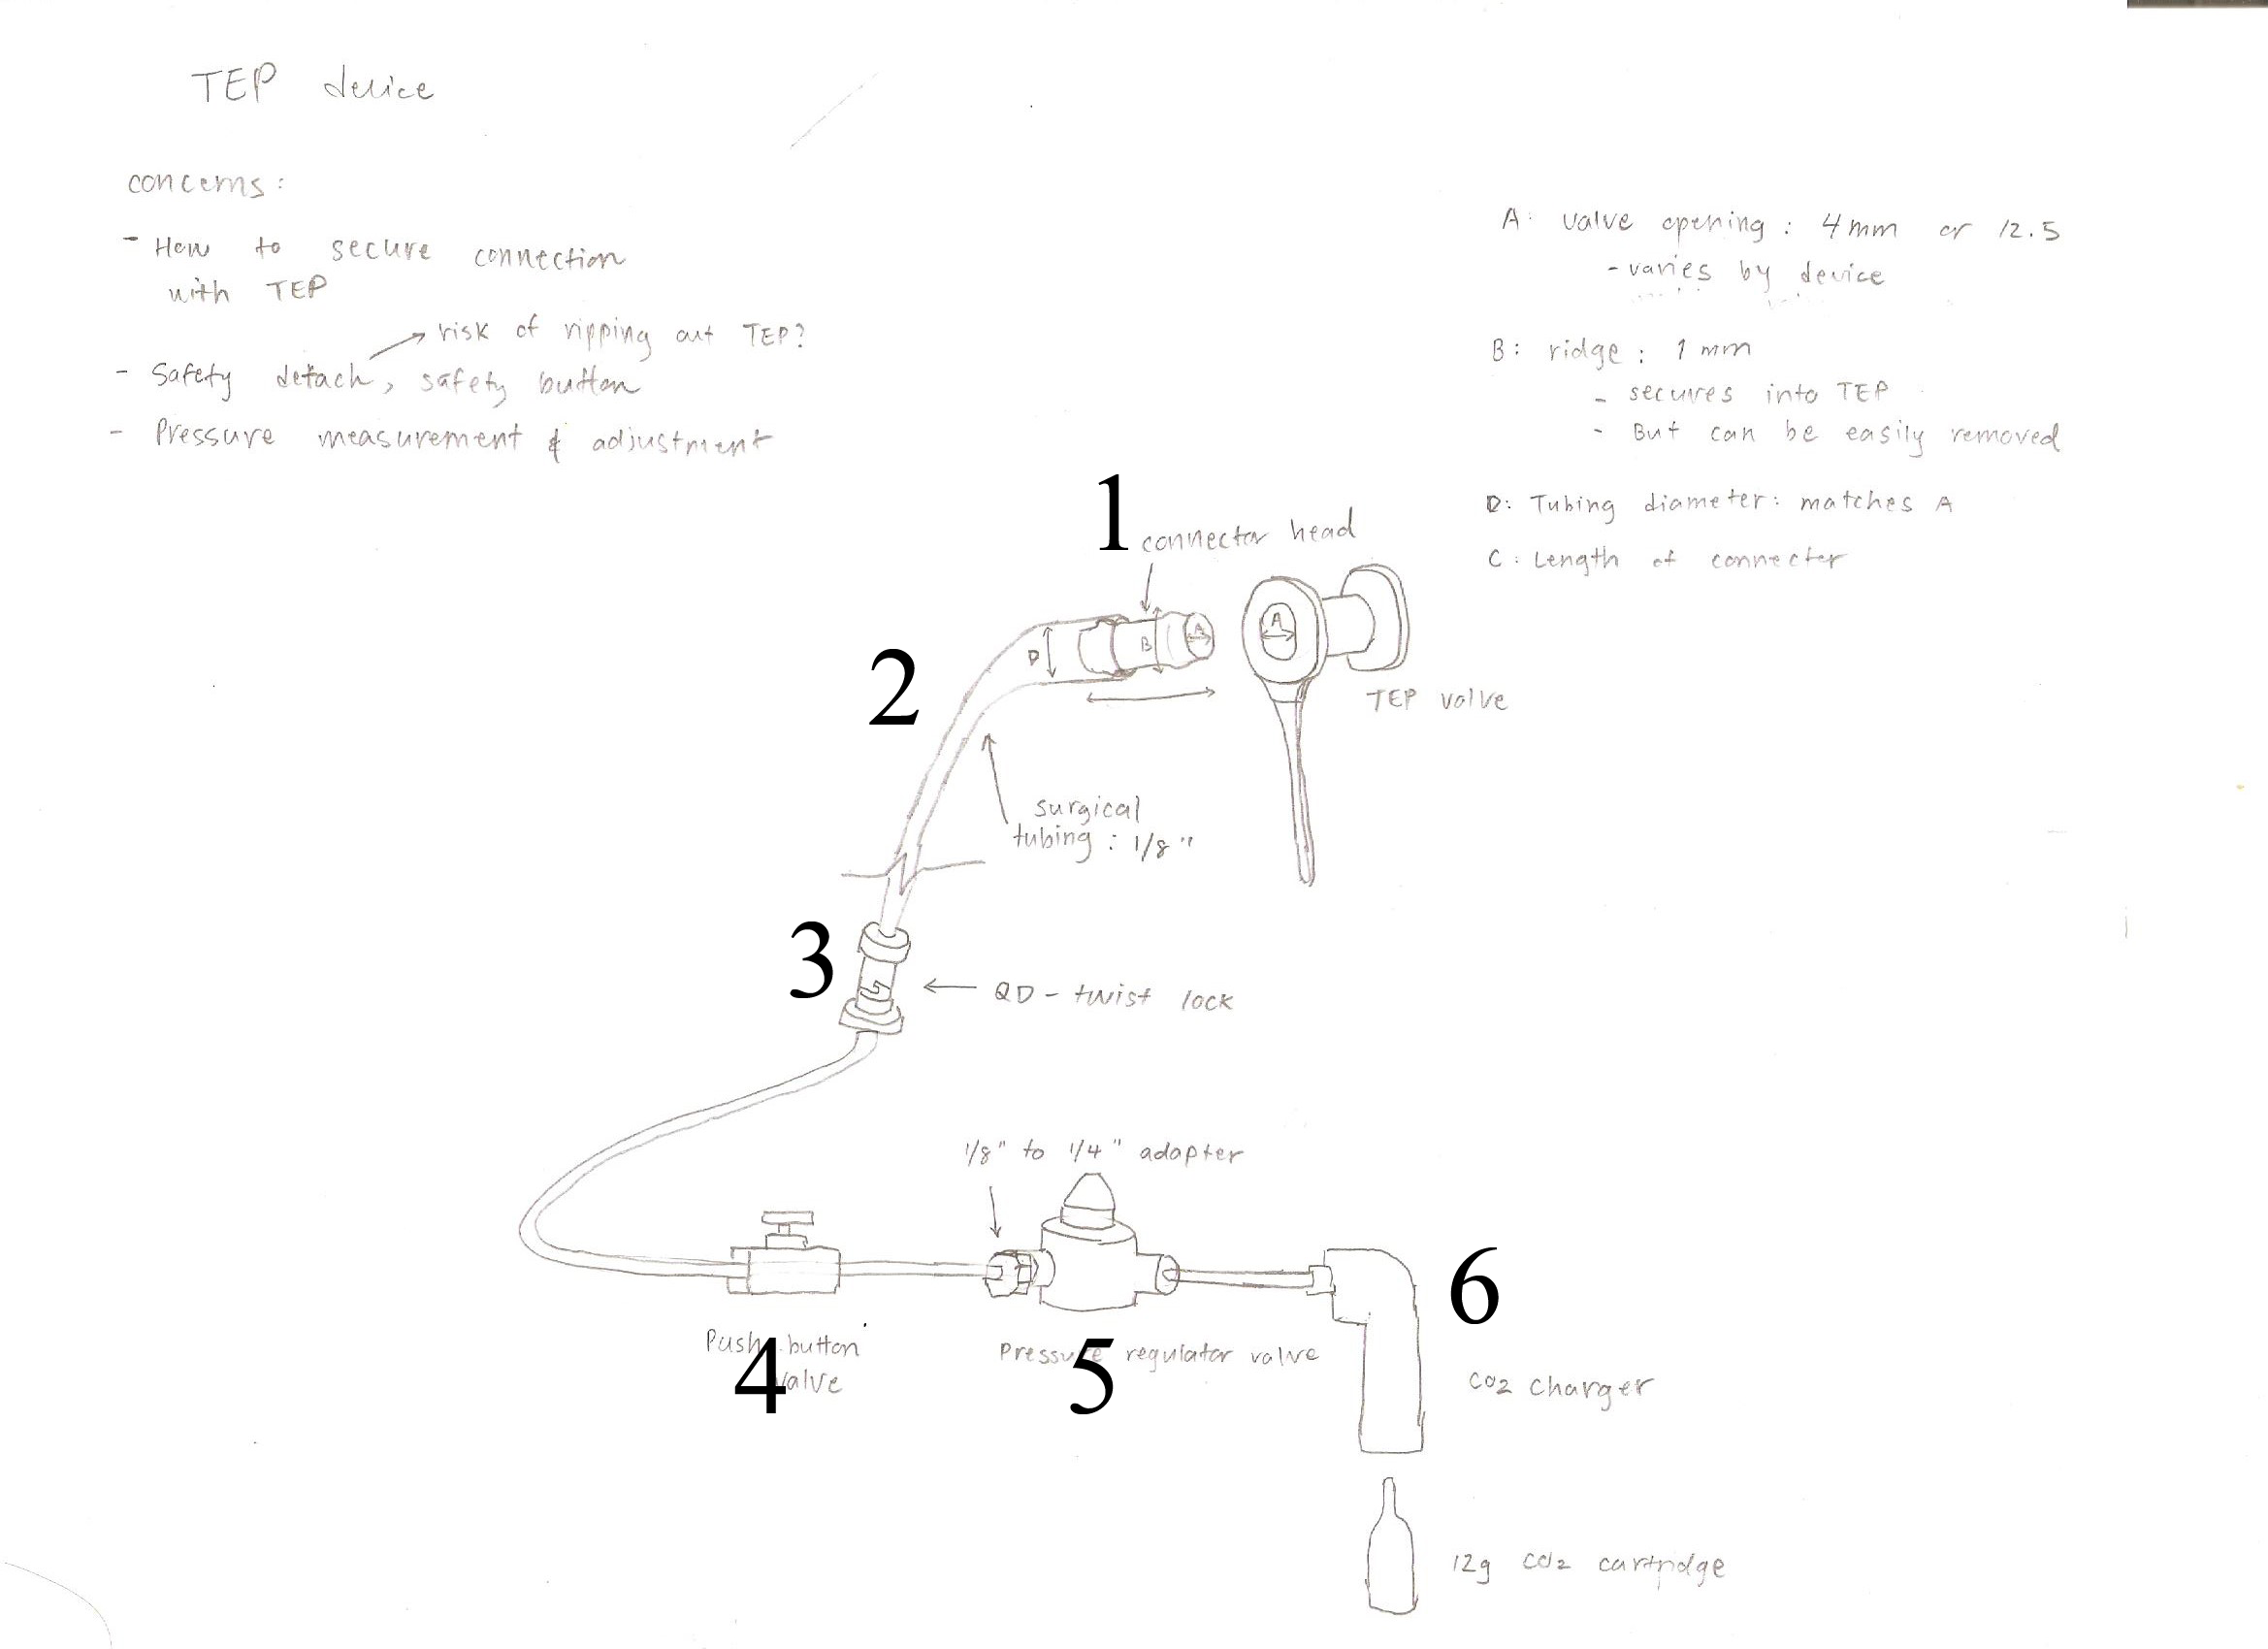 Initial sketch of insufflator